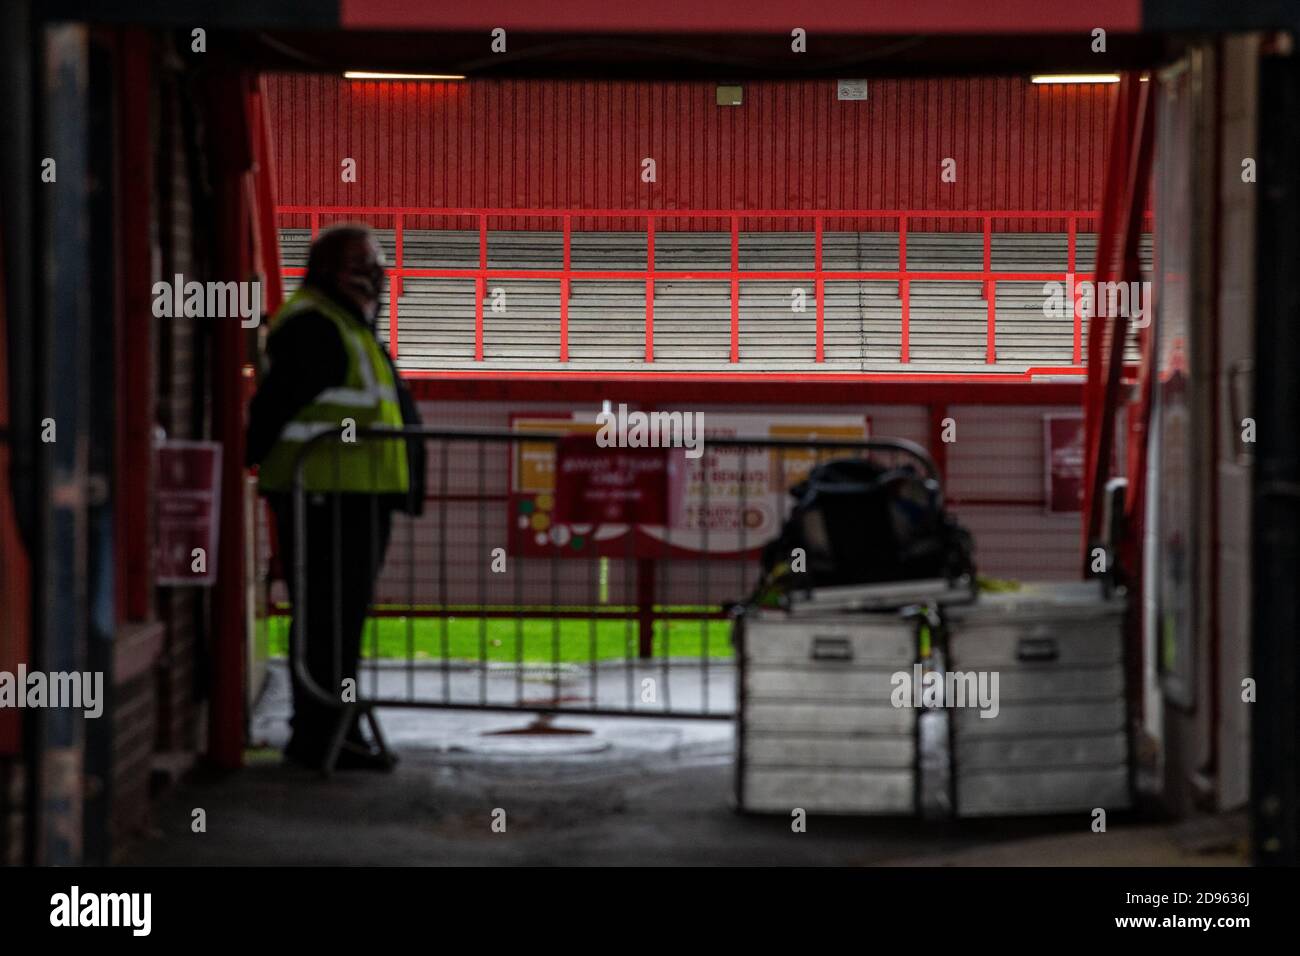 Steward si trova accanto all'ingresso dei giocatori allo stadio di calcio vuoto che si trova davanti Di gioco che si gioca a porte chiuse durante la pandemia di Covid-19 In Inghilterra Regno Unito Foto Stock